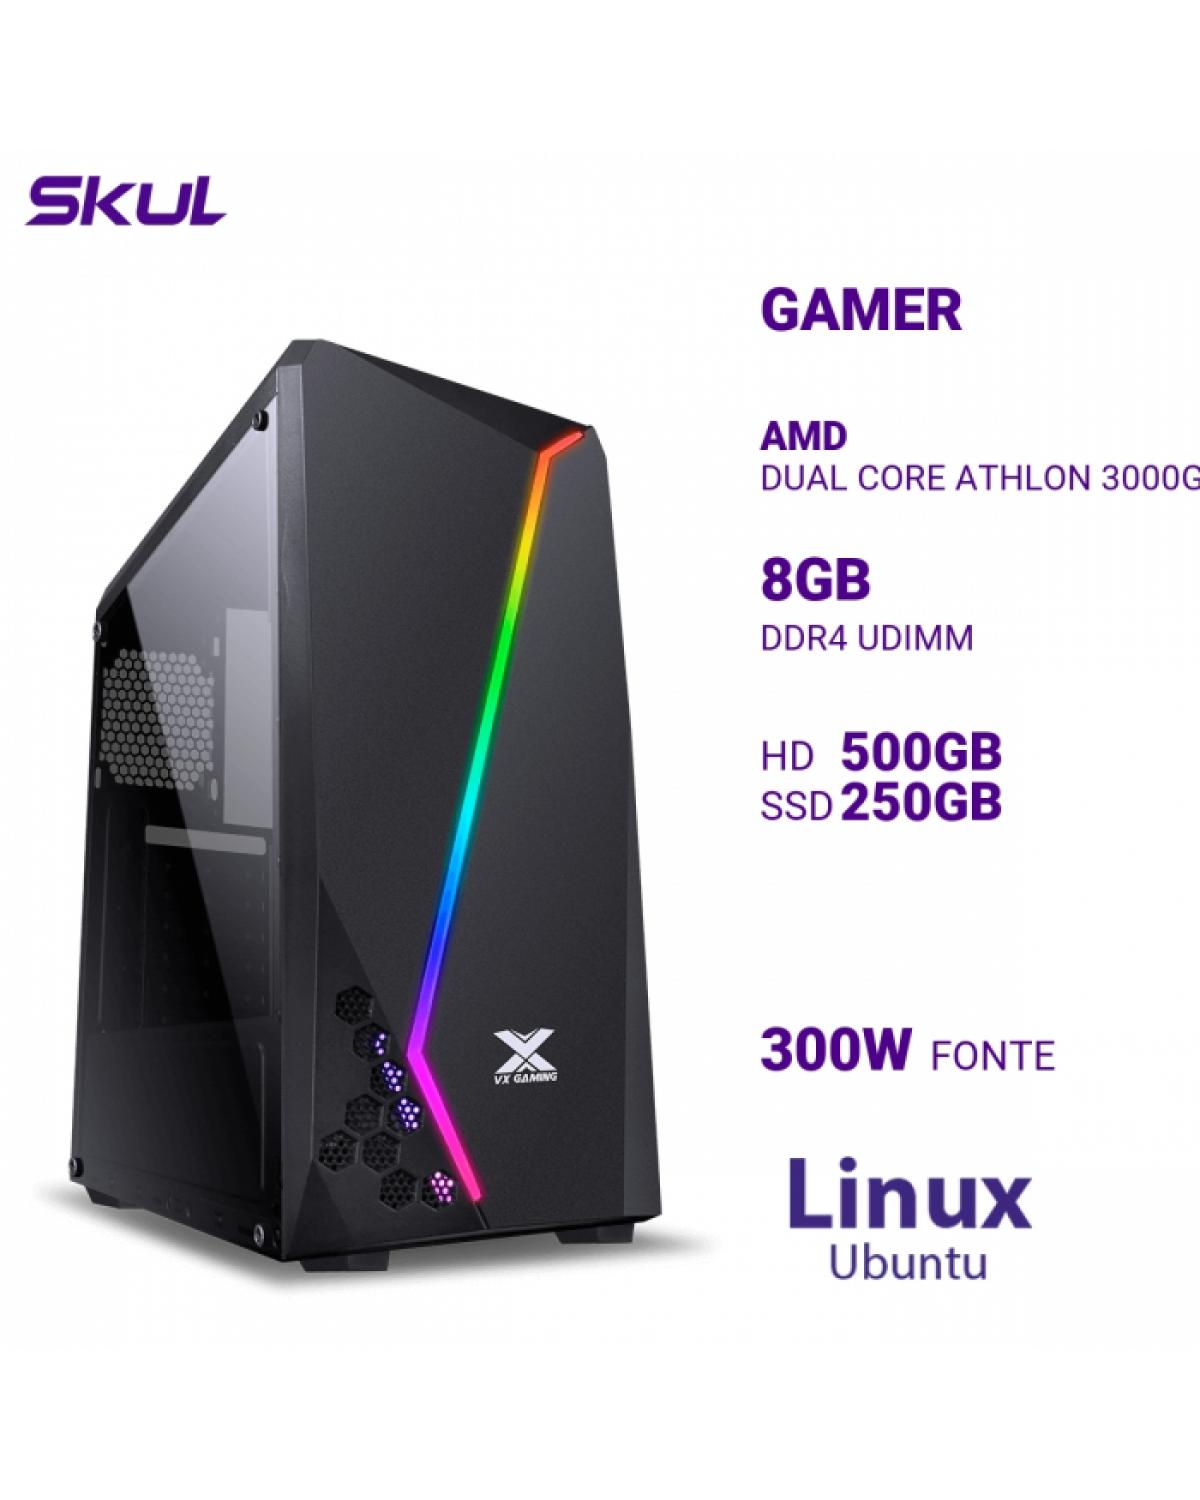 COMPUTADOR GAMER 1000 DUAL CORE ATHLON 3000G 3.50GHZ MEM 8GB DDR4 HD 500GB SSD 250GB NVME FONTE 300W LINUX